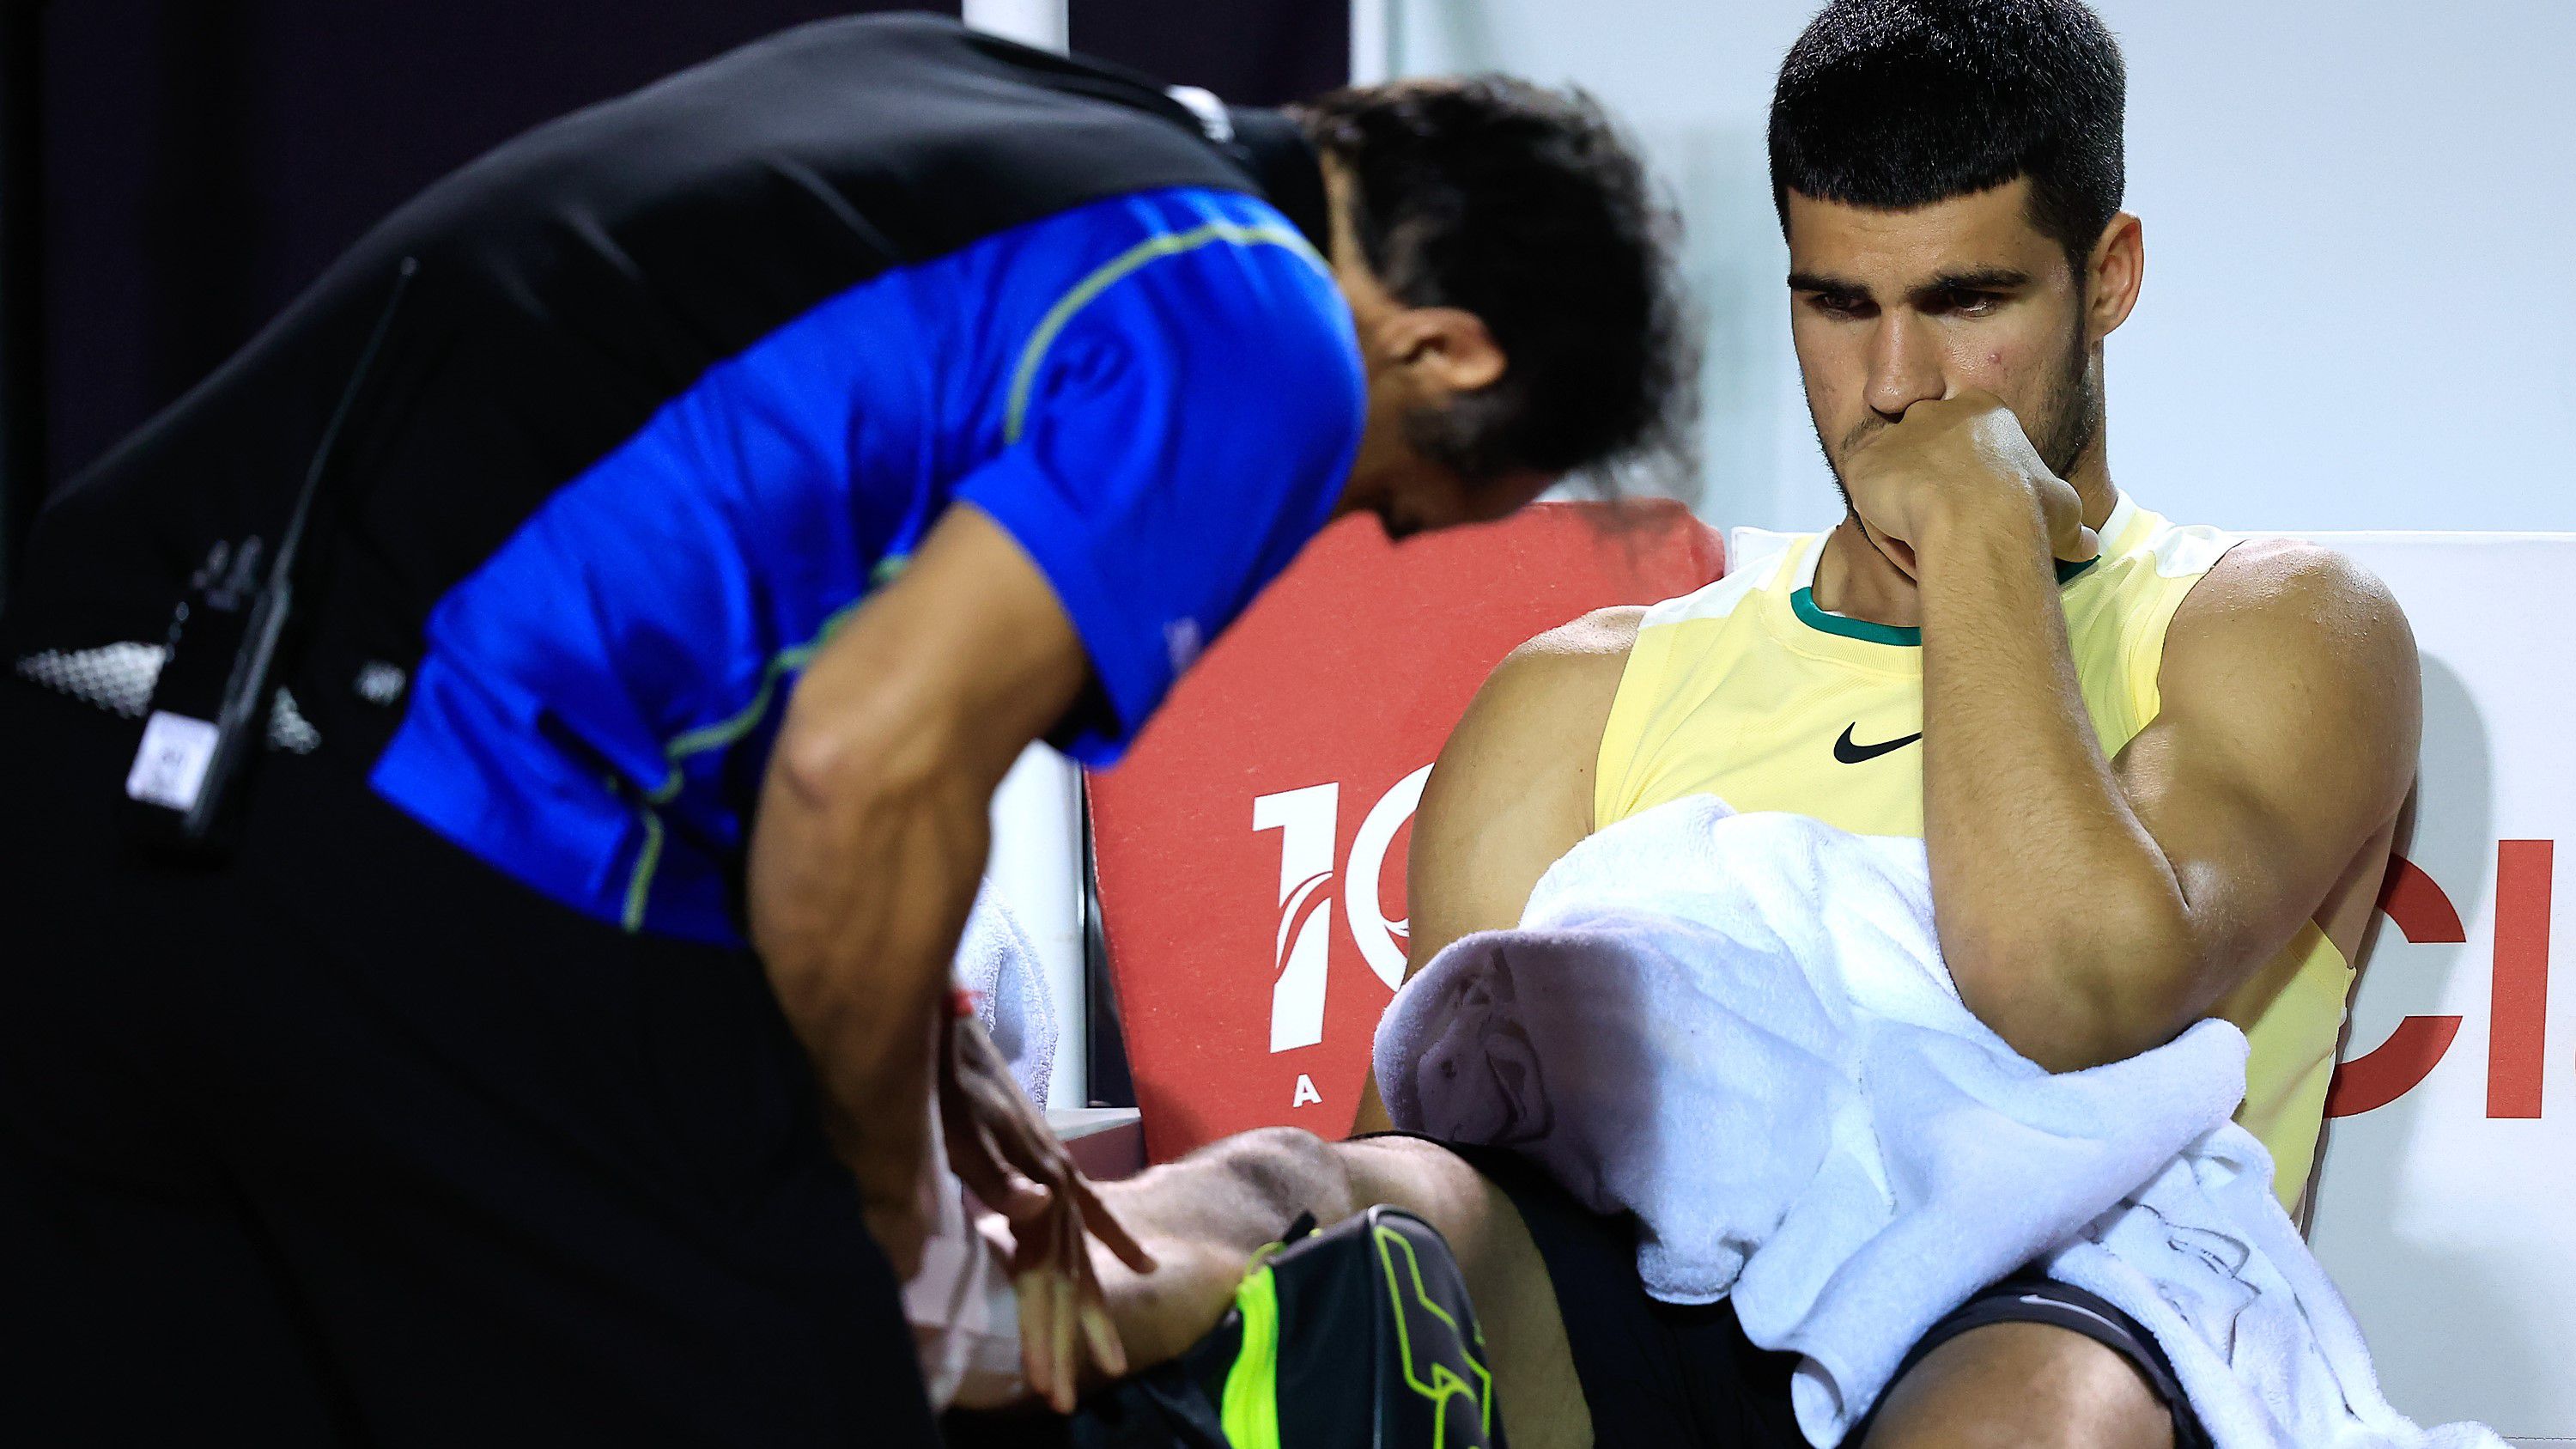 Nem tudni még, mekkora a baj – tíz perc után feladta meccsét a spanyol teniszsztár